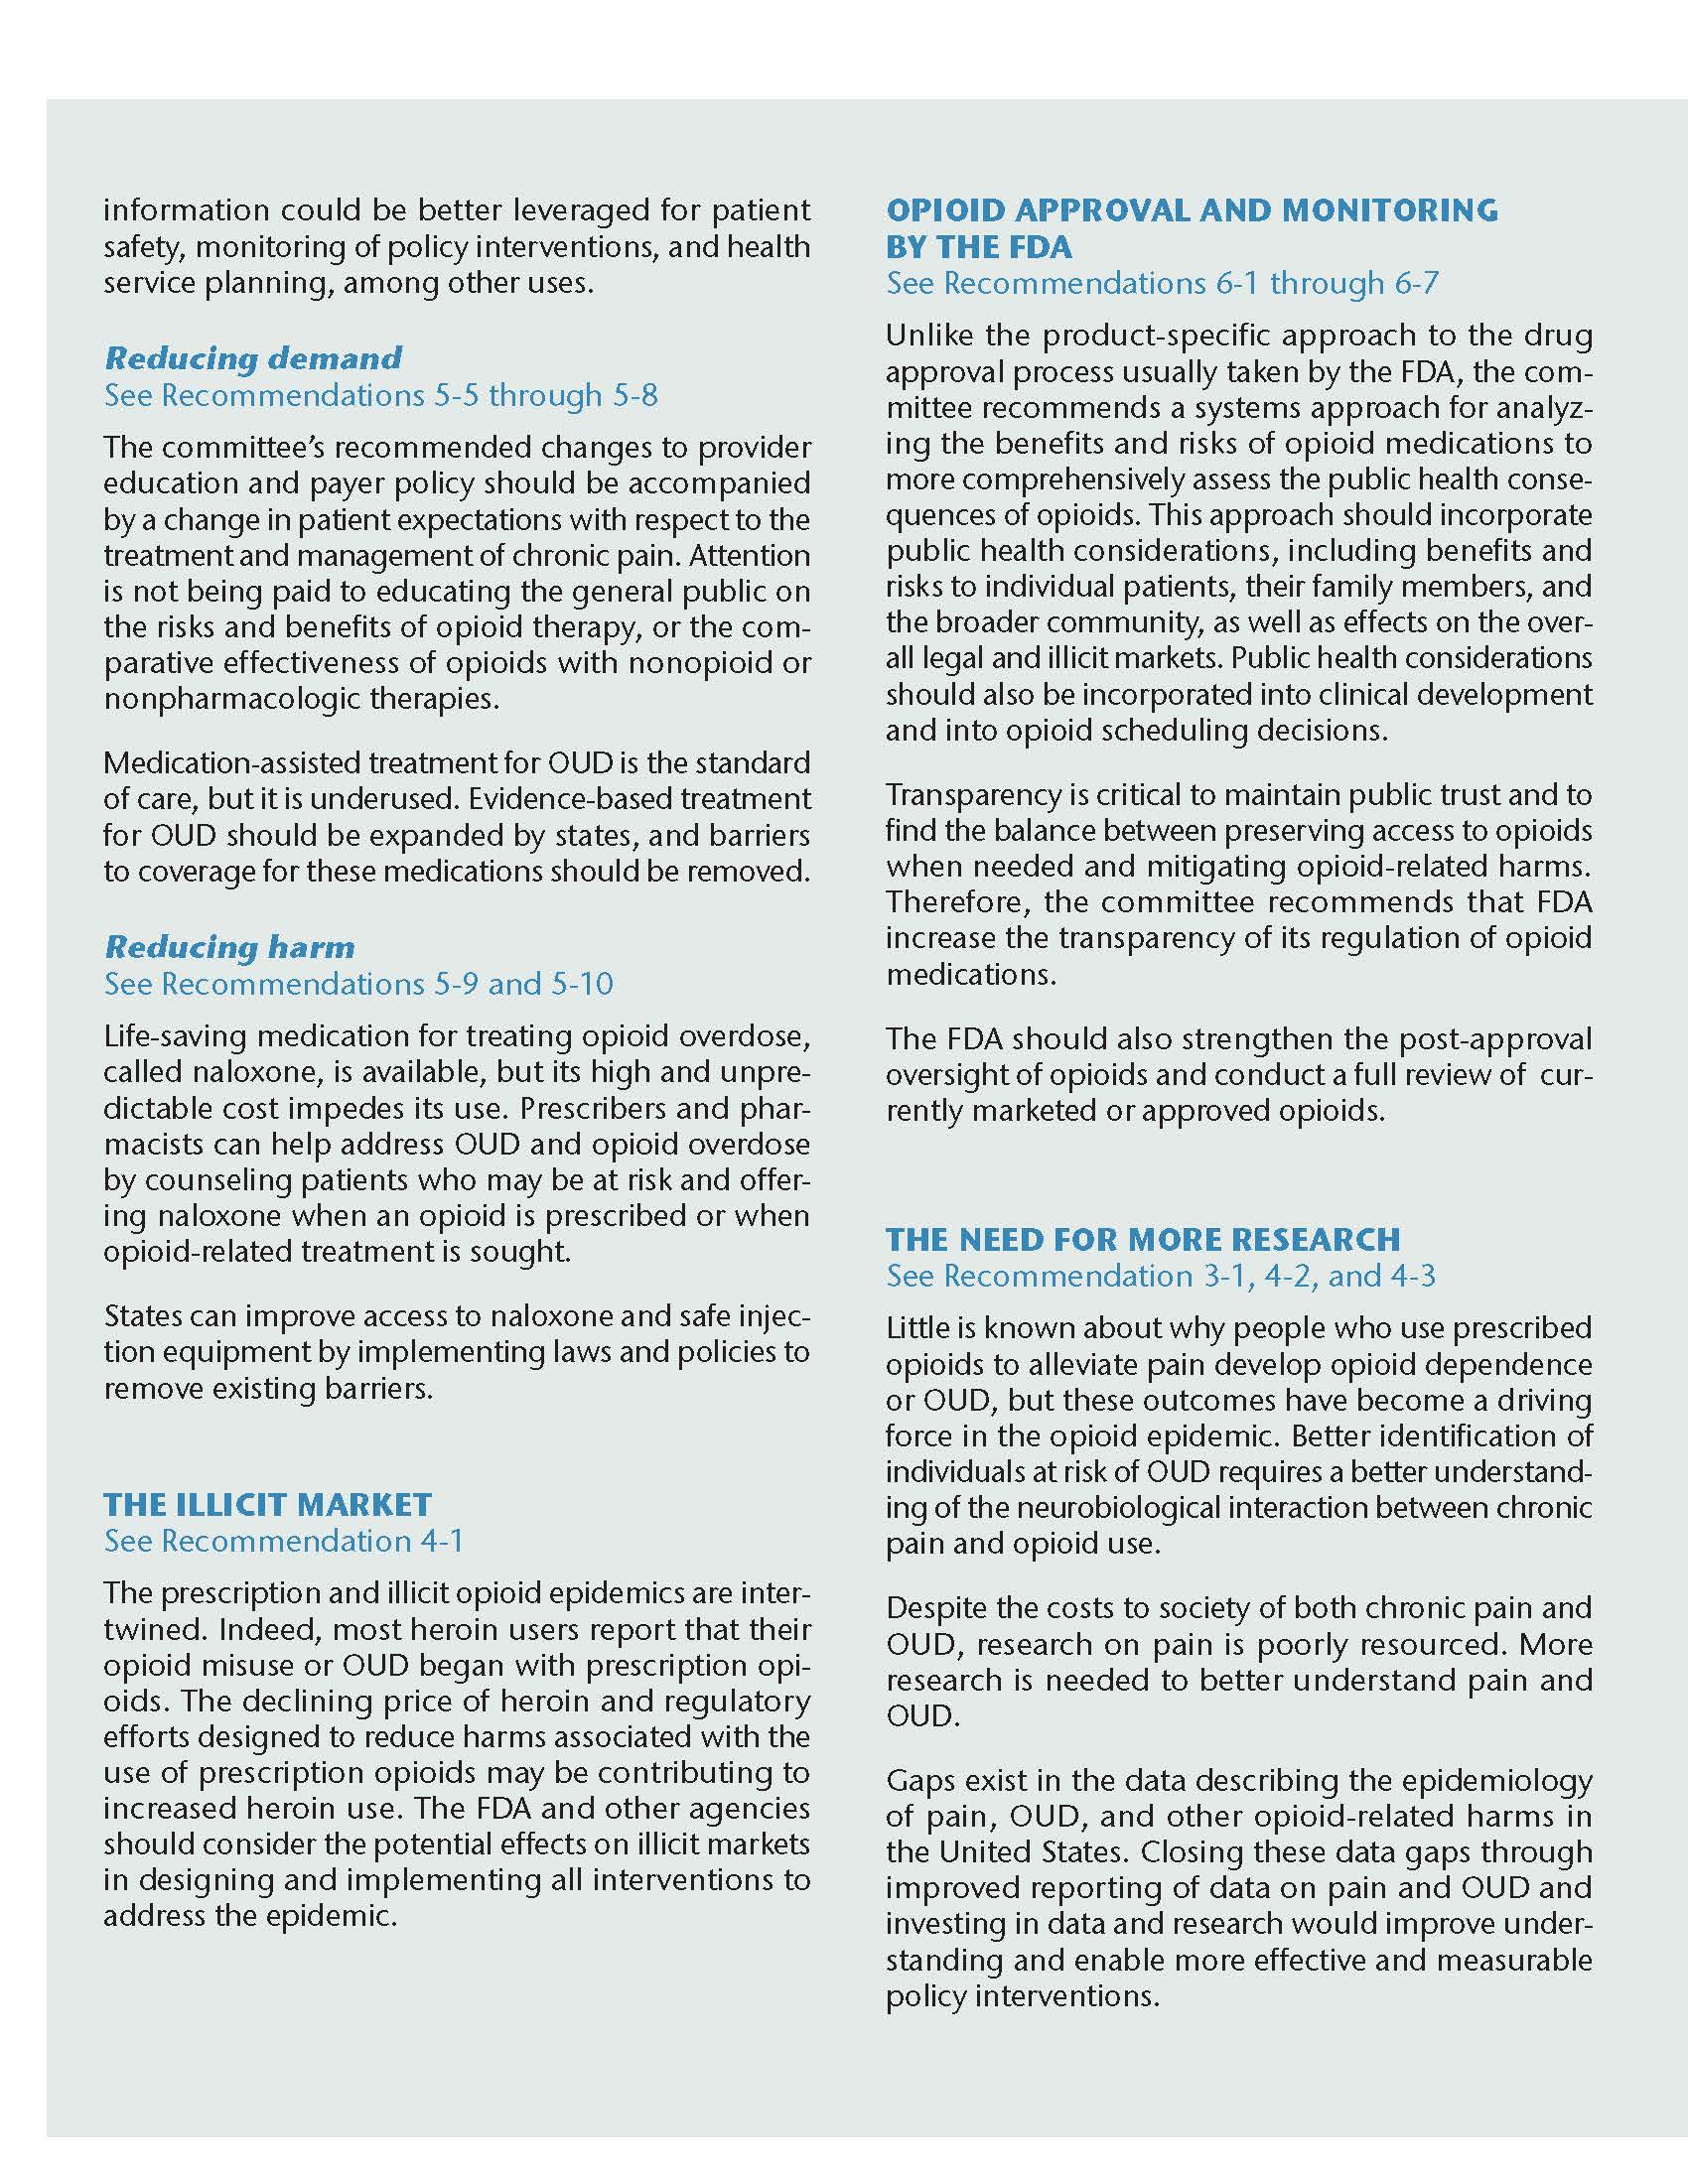 NASEM Consensus Report Summary page 3